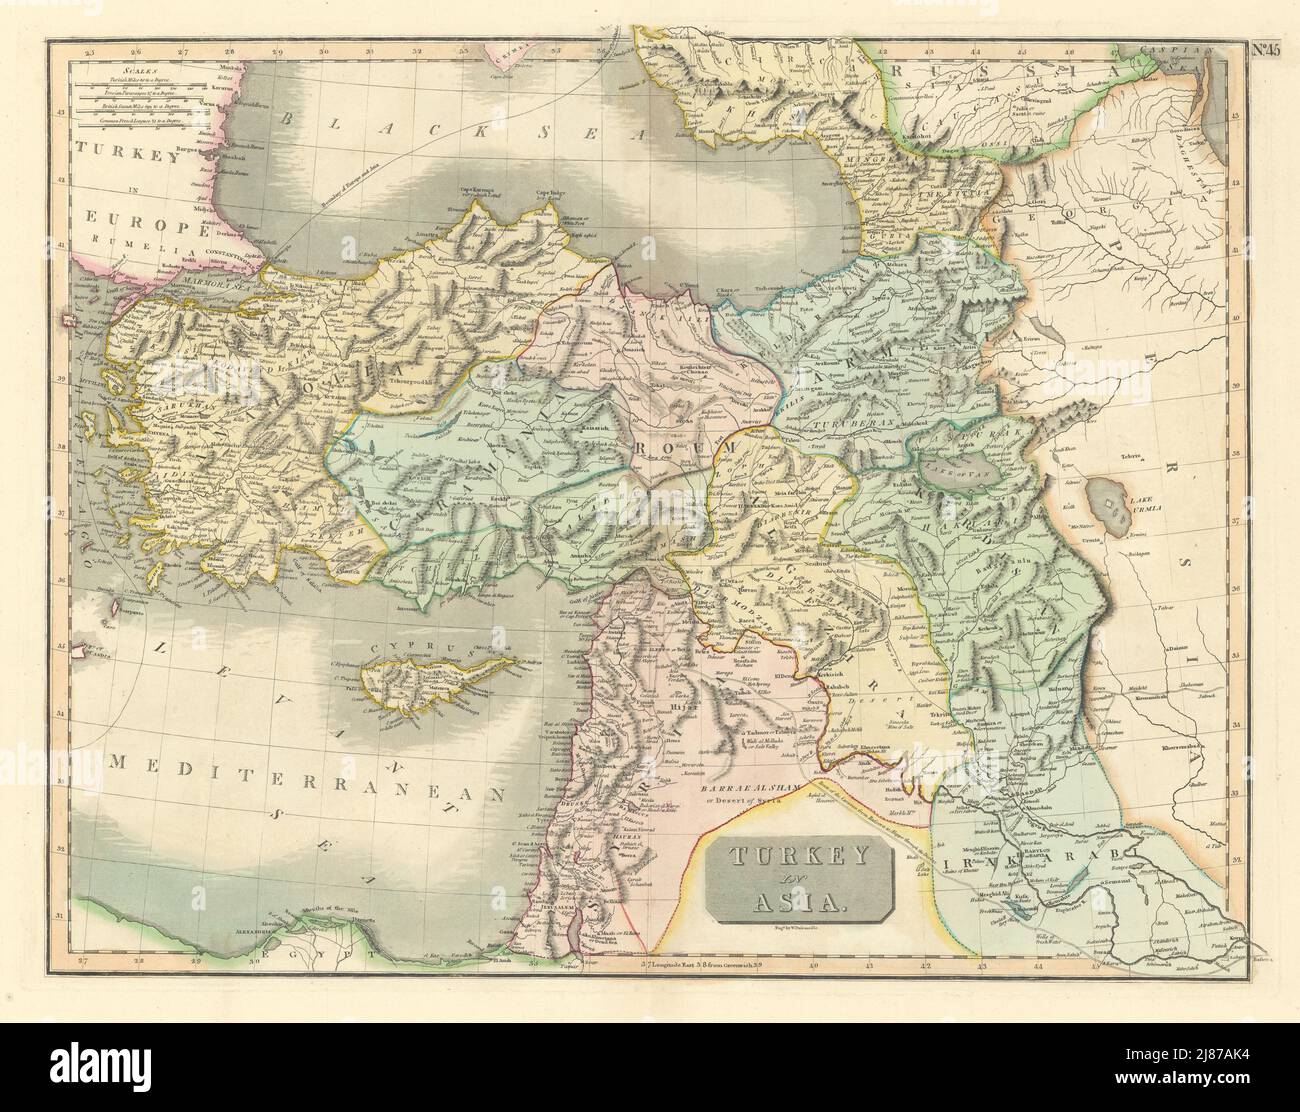 'Turkey in Asia'. Anatolia Levant Kurdistan Armenia Cyprus. THOMSON 1817 map Stock Photo